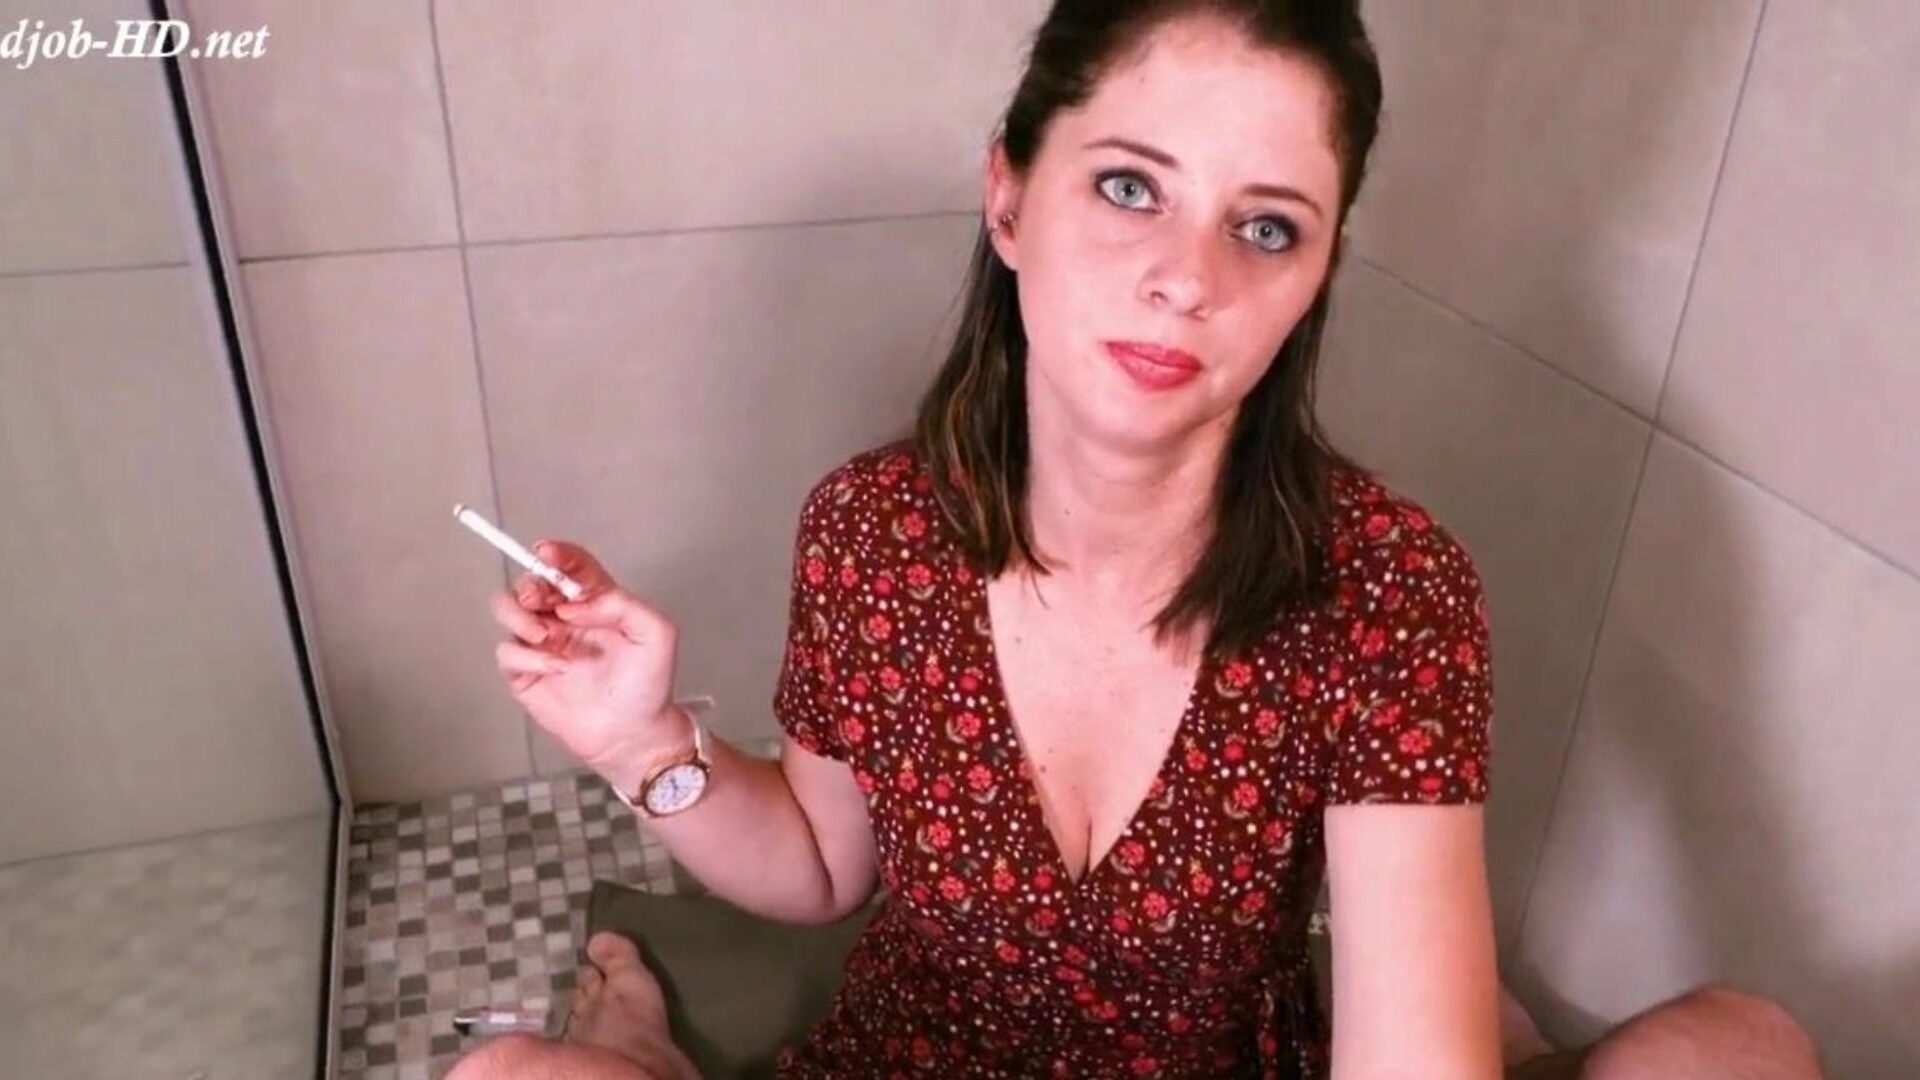 Armbanduhr rauchen Hand Job sauber Sperma auf Uhr mit ... Uhr Armbanduhr rauchen Hand Job sauber Sperma auf Uhr mit Mund Filmszene auf Xhamster - die ultimative Schar von Free-for-All-Mutter, die ich ficken möchte & Domina HD Porno Tube Videos